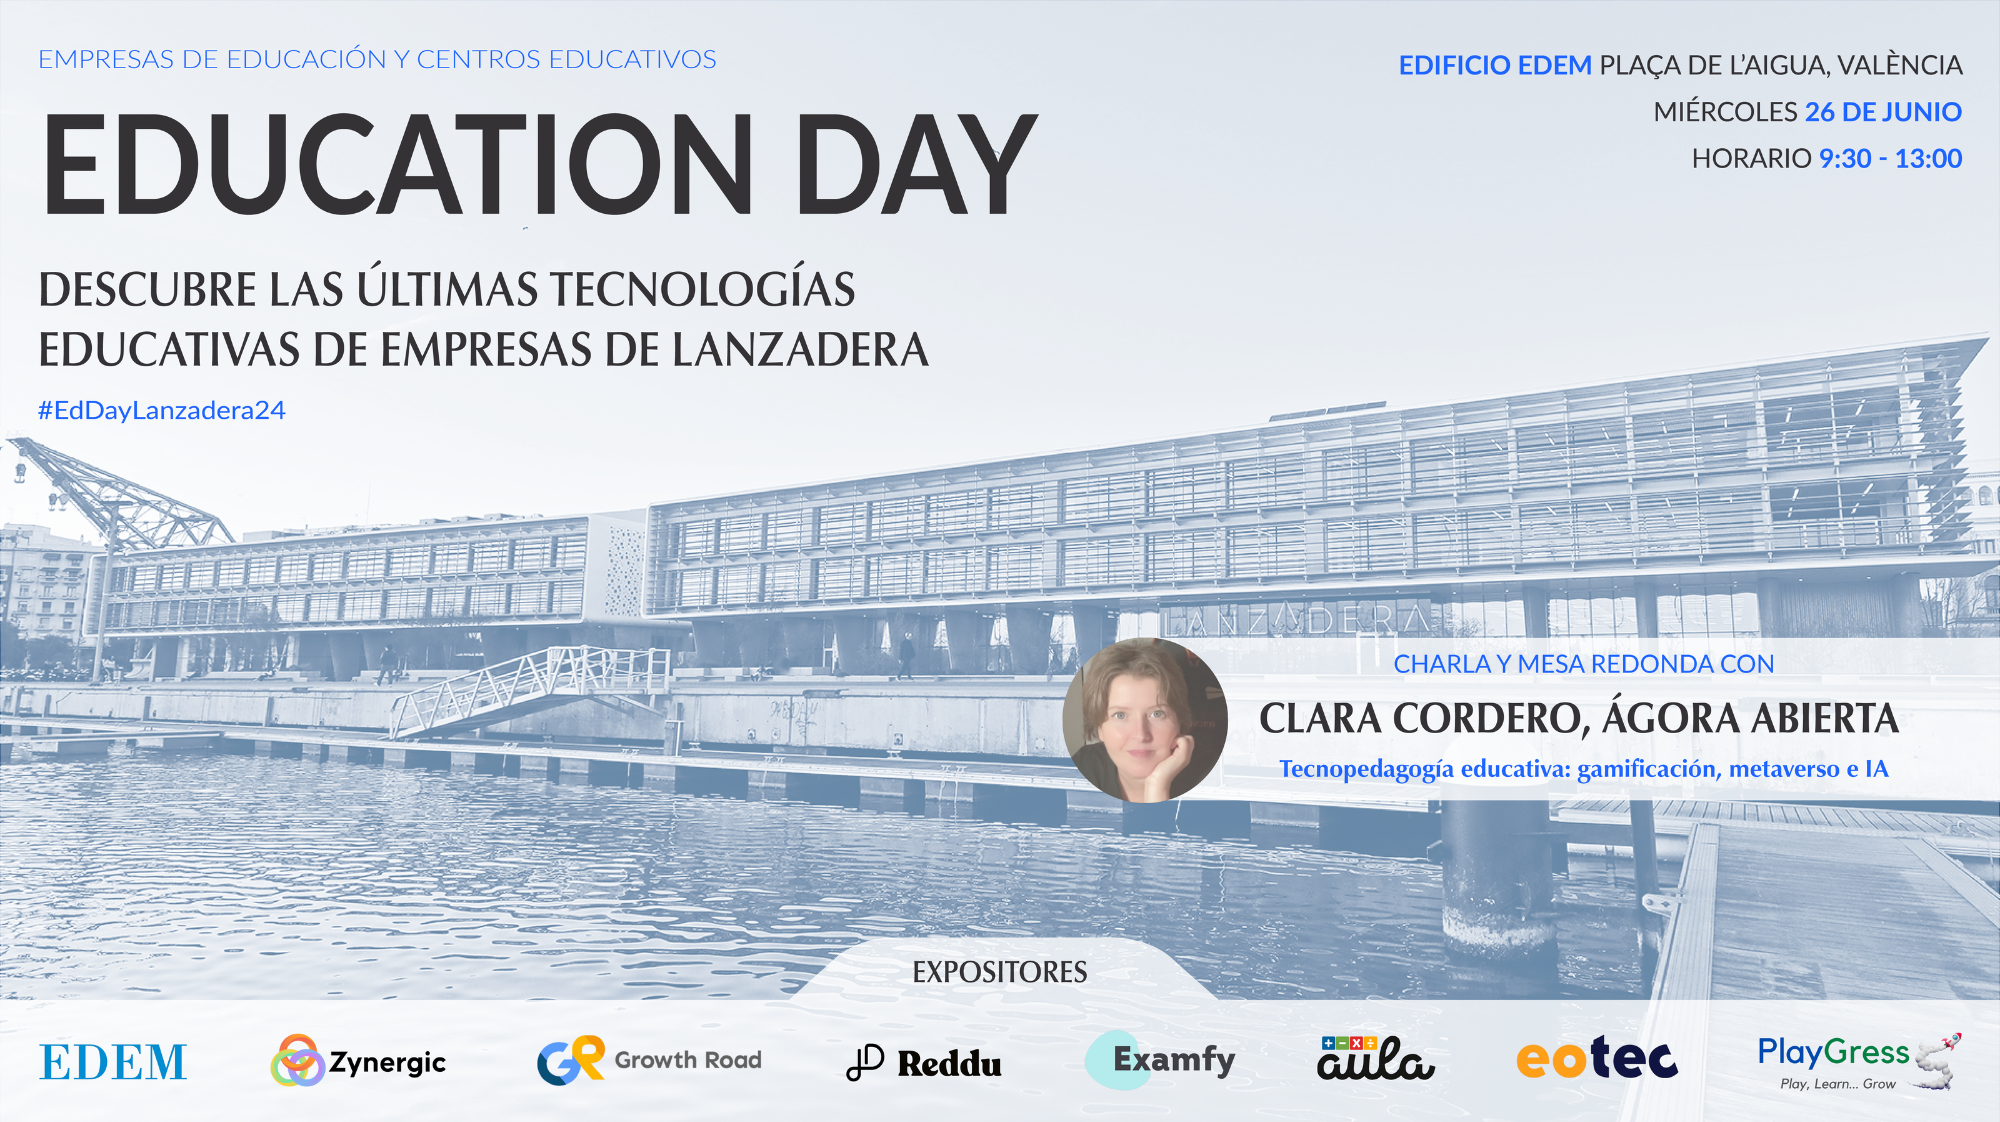 Education Day: el evento de tecnologías educativas, gamificación, IA y mucho más